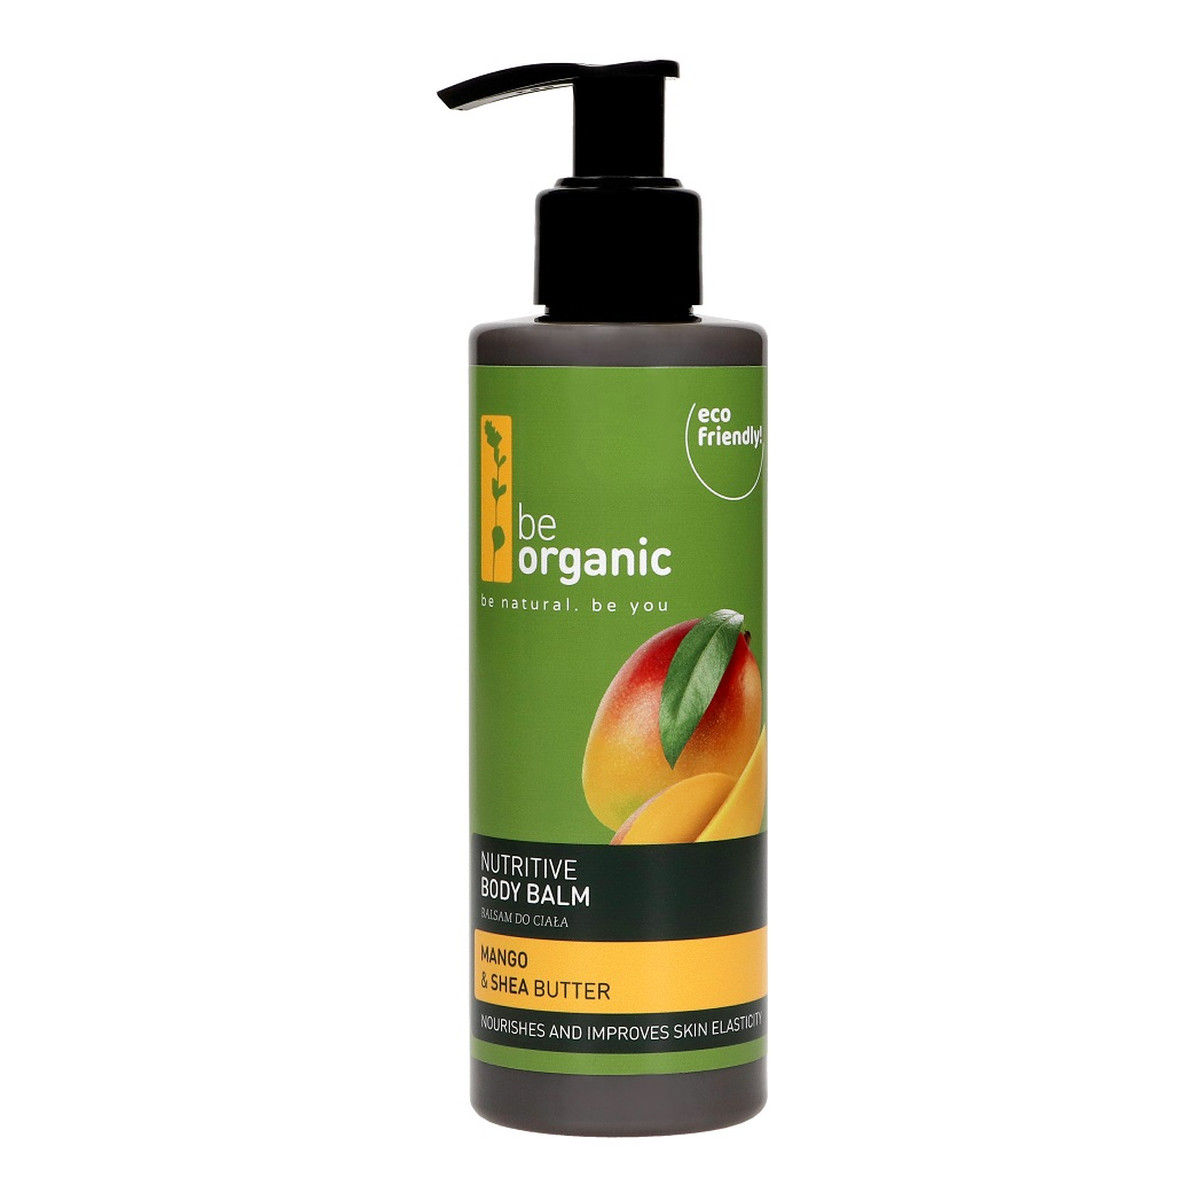 Be Organic Nutritive Body Balm odżywczy Balsam do ciała mango & masło shea 200ml